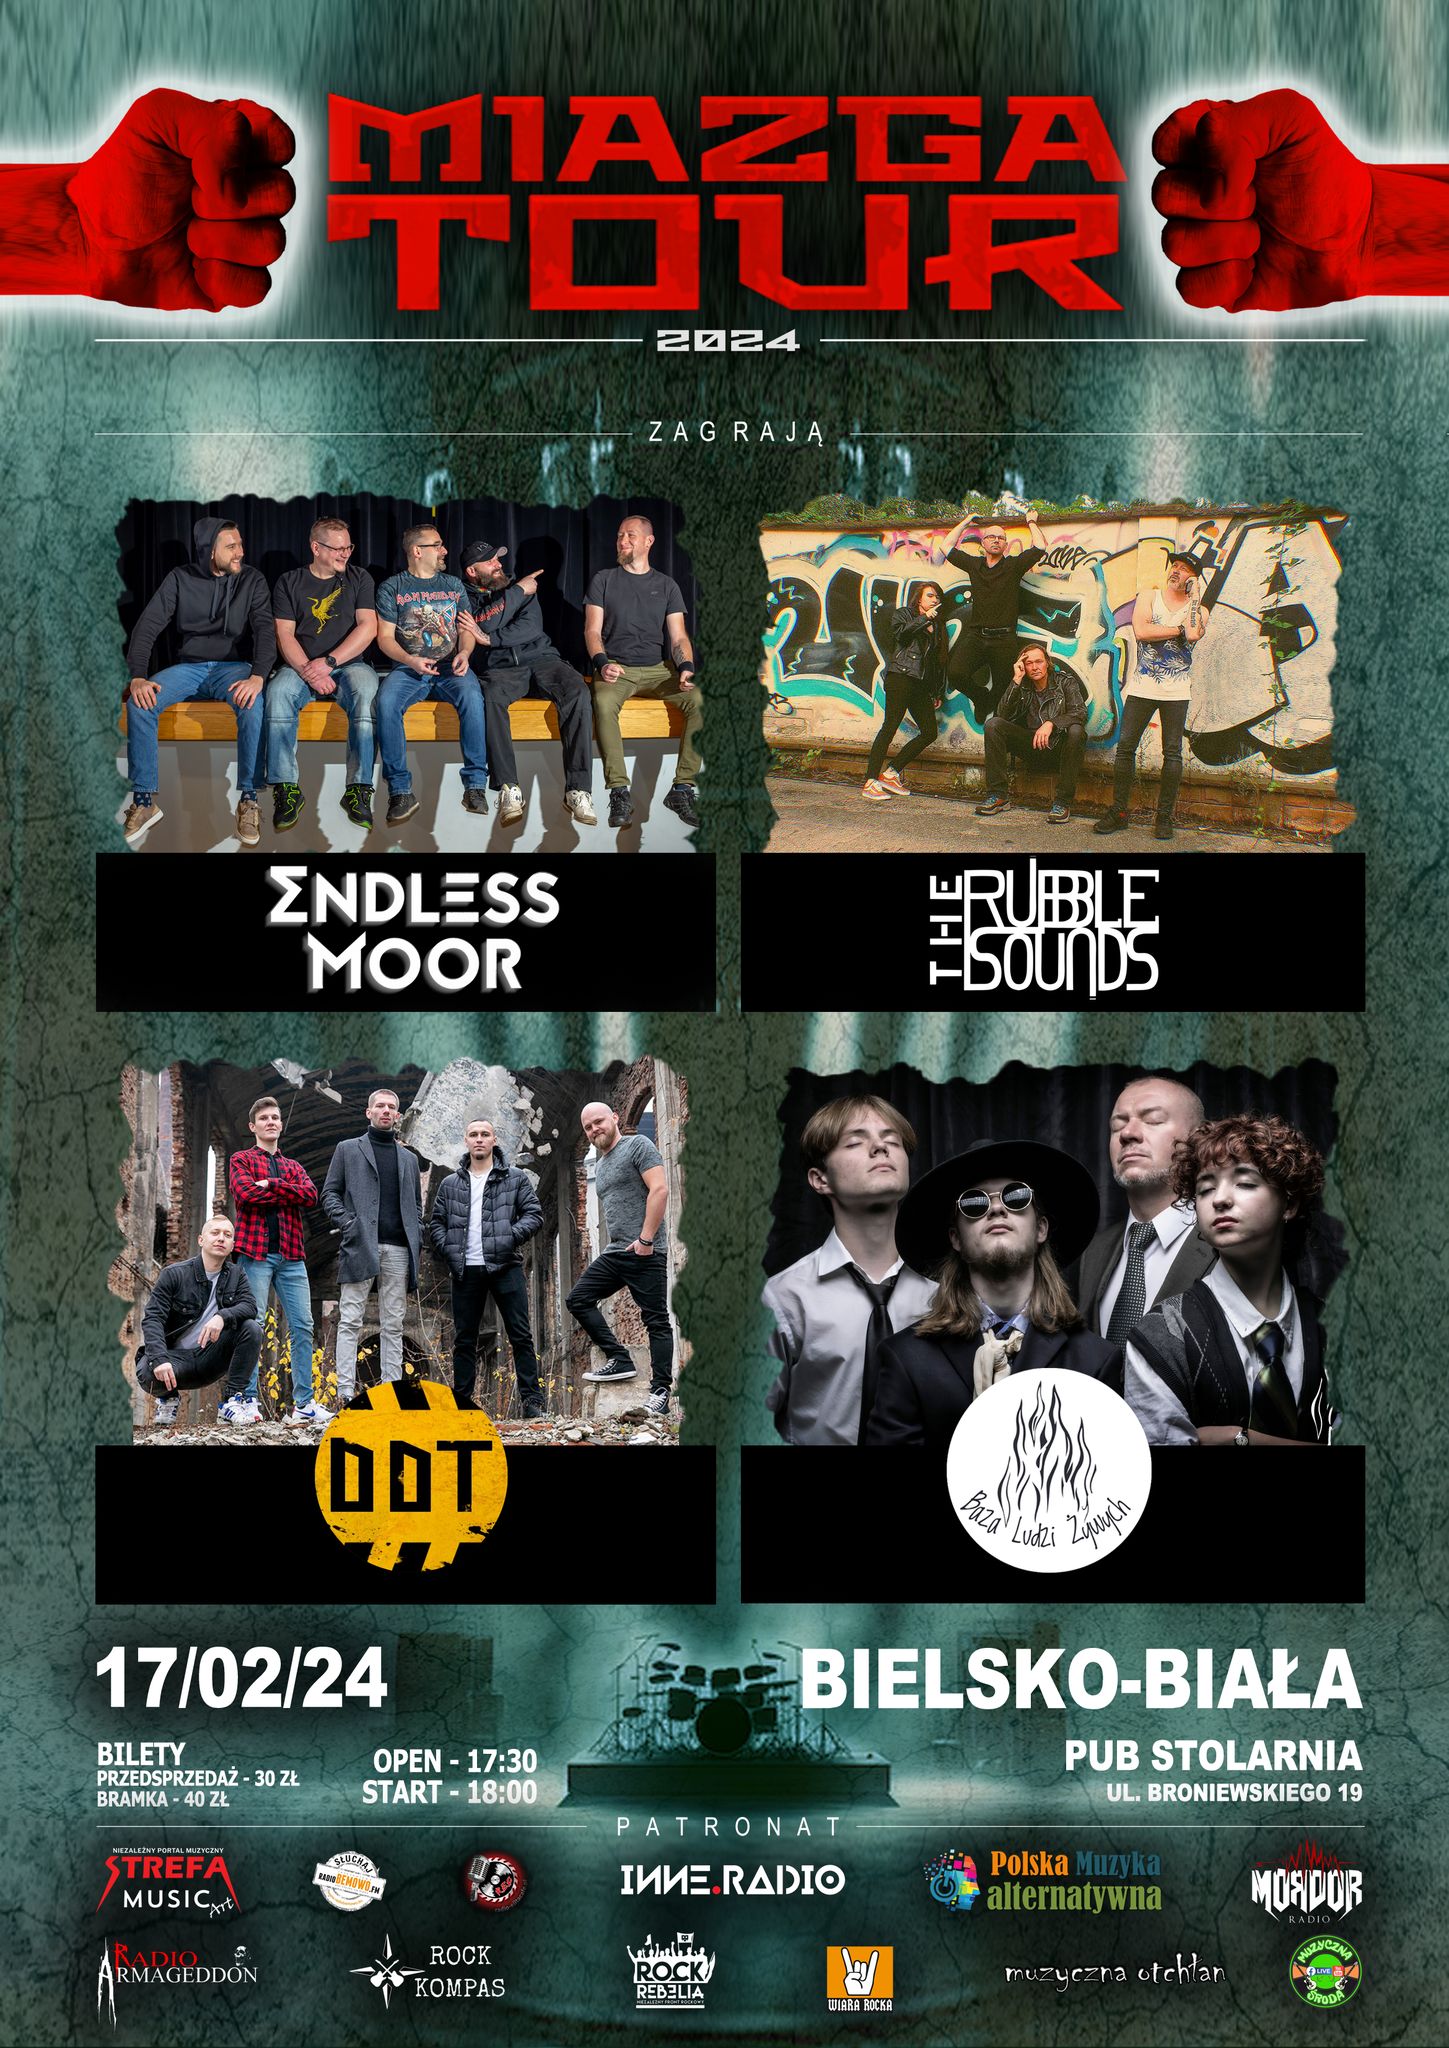 MIAZGA TOUR – Bielsko-Biała